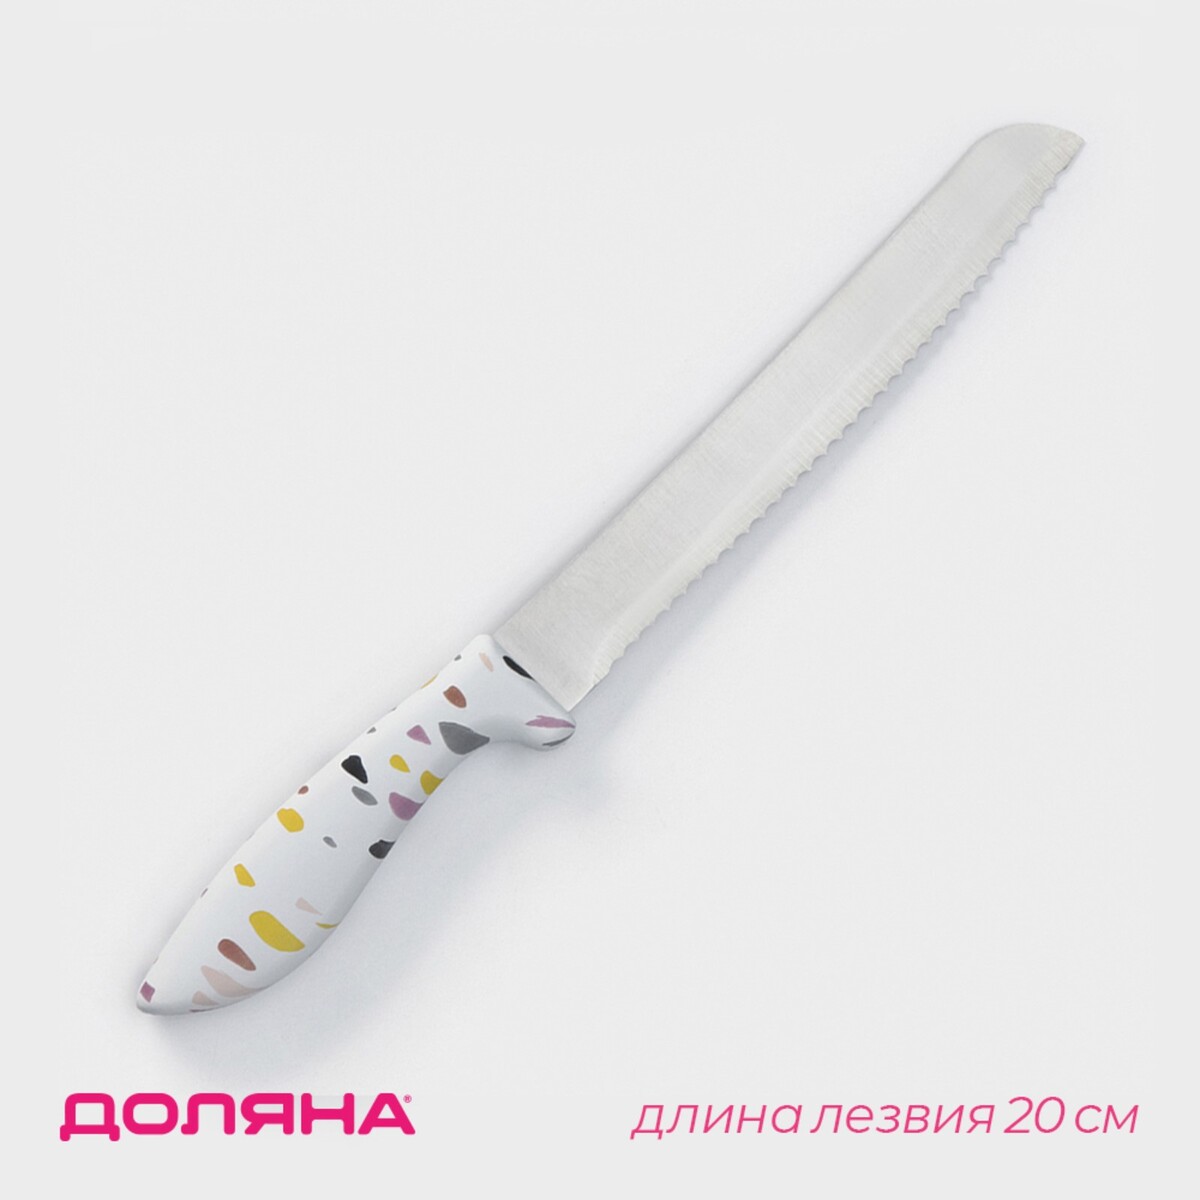 Нож для хлеба доляна sparkle, лезвие 20 см, цвет белый нож для овощей кухонный доляна sparkle лезвие 9 см белый